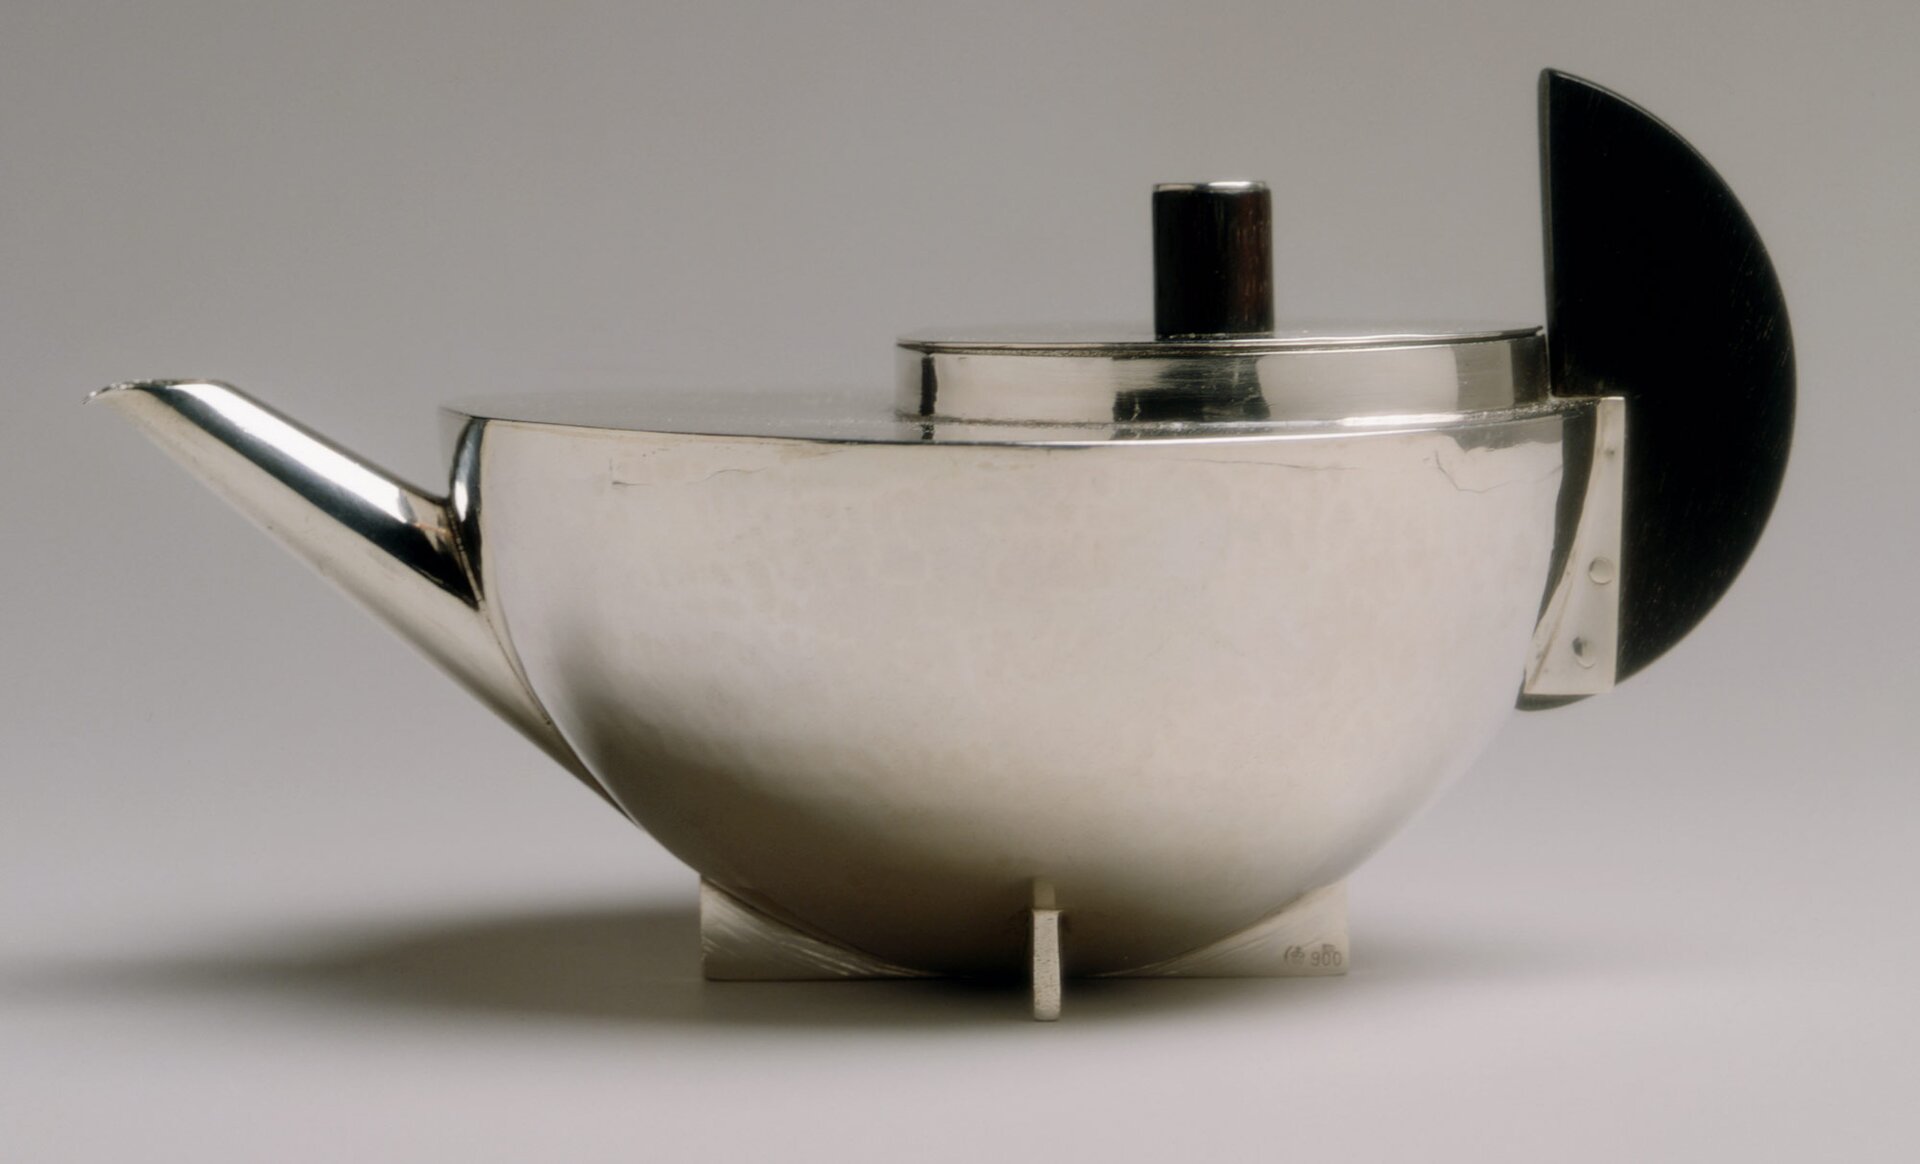 Fotografia przedstawia srebrny imbryk do herbaty. Naczynie wykonane jest ze stali nierdzewnej o kształcie półkuli z prostym wylewem i okrągłą pokrywką, wystającą na jednej połowie płaskiej części czaszy imbryka. Uchwyt jest czarnym półksiężycem.